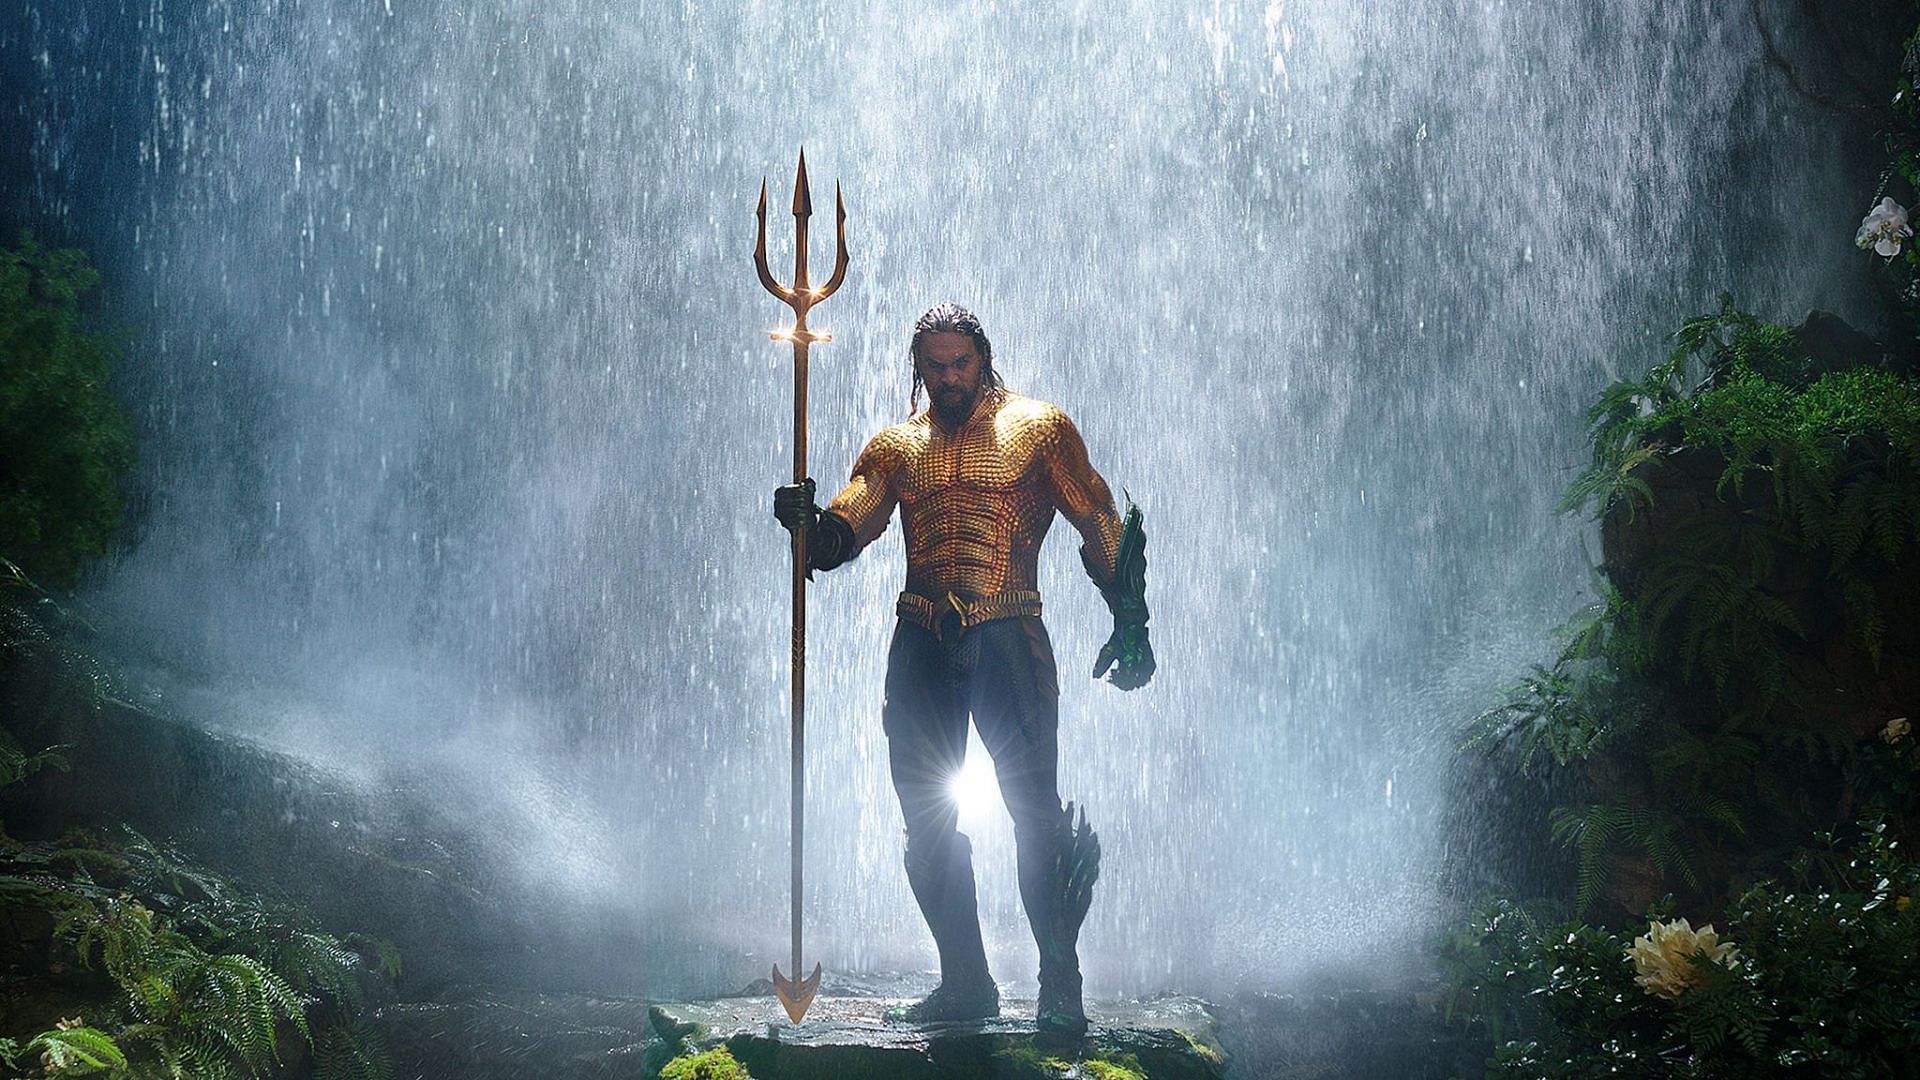 Jason Momoa playing Aquaman (Image credit Warner Brothers)